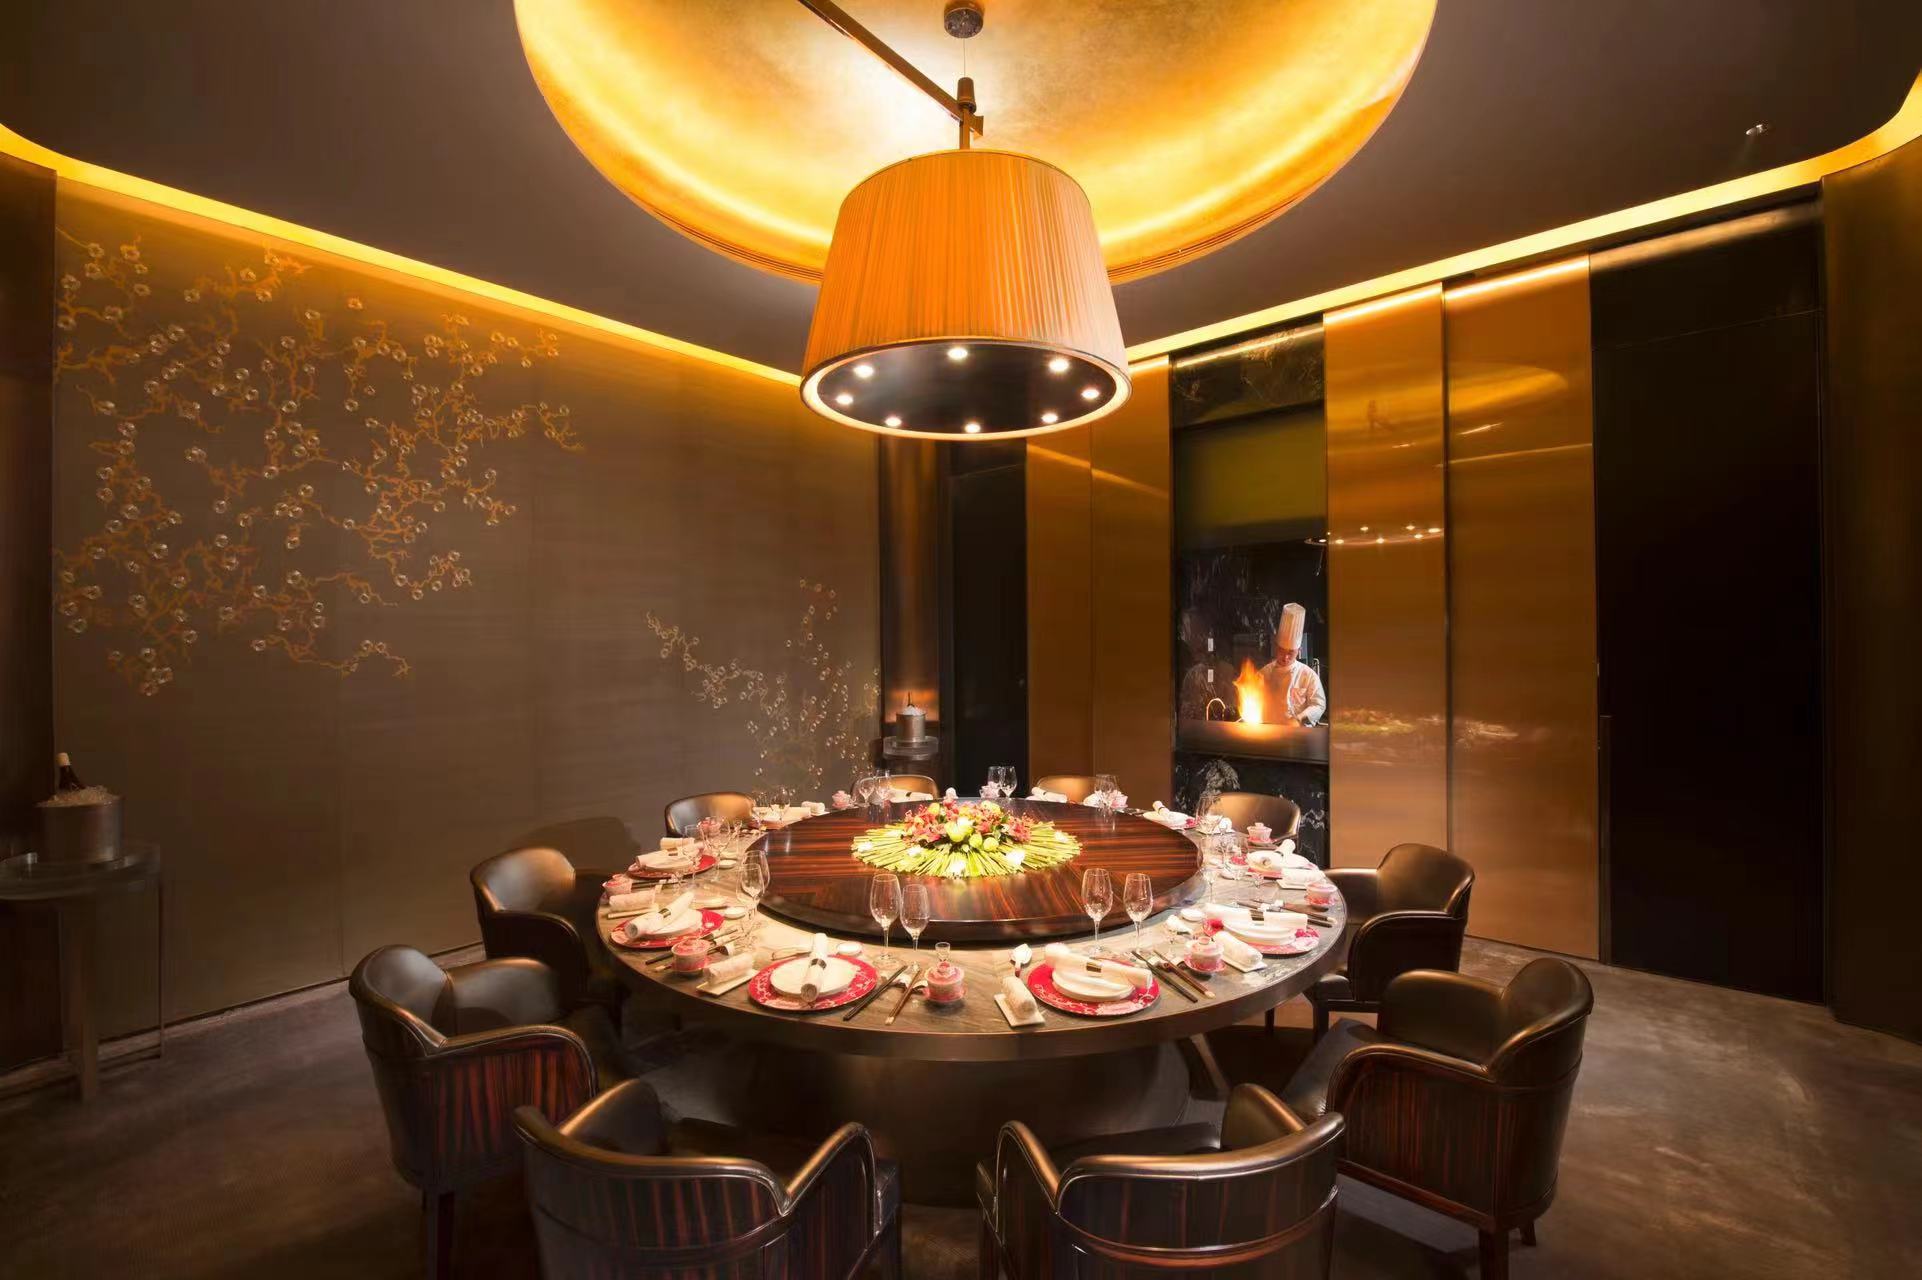 北京康莱德酒店任命赖满棠为陆羽中餐行政总厨